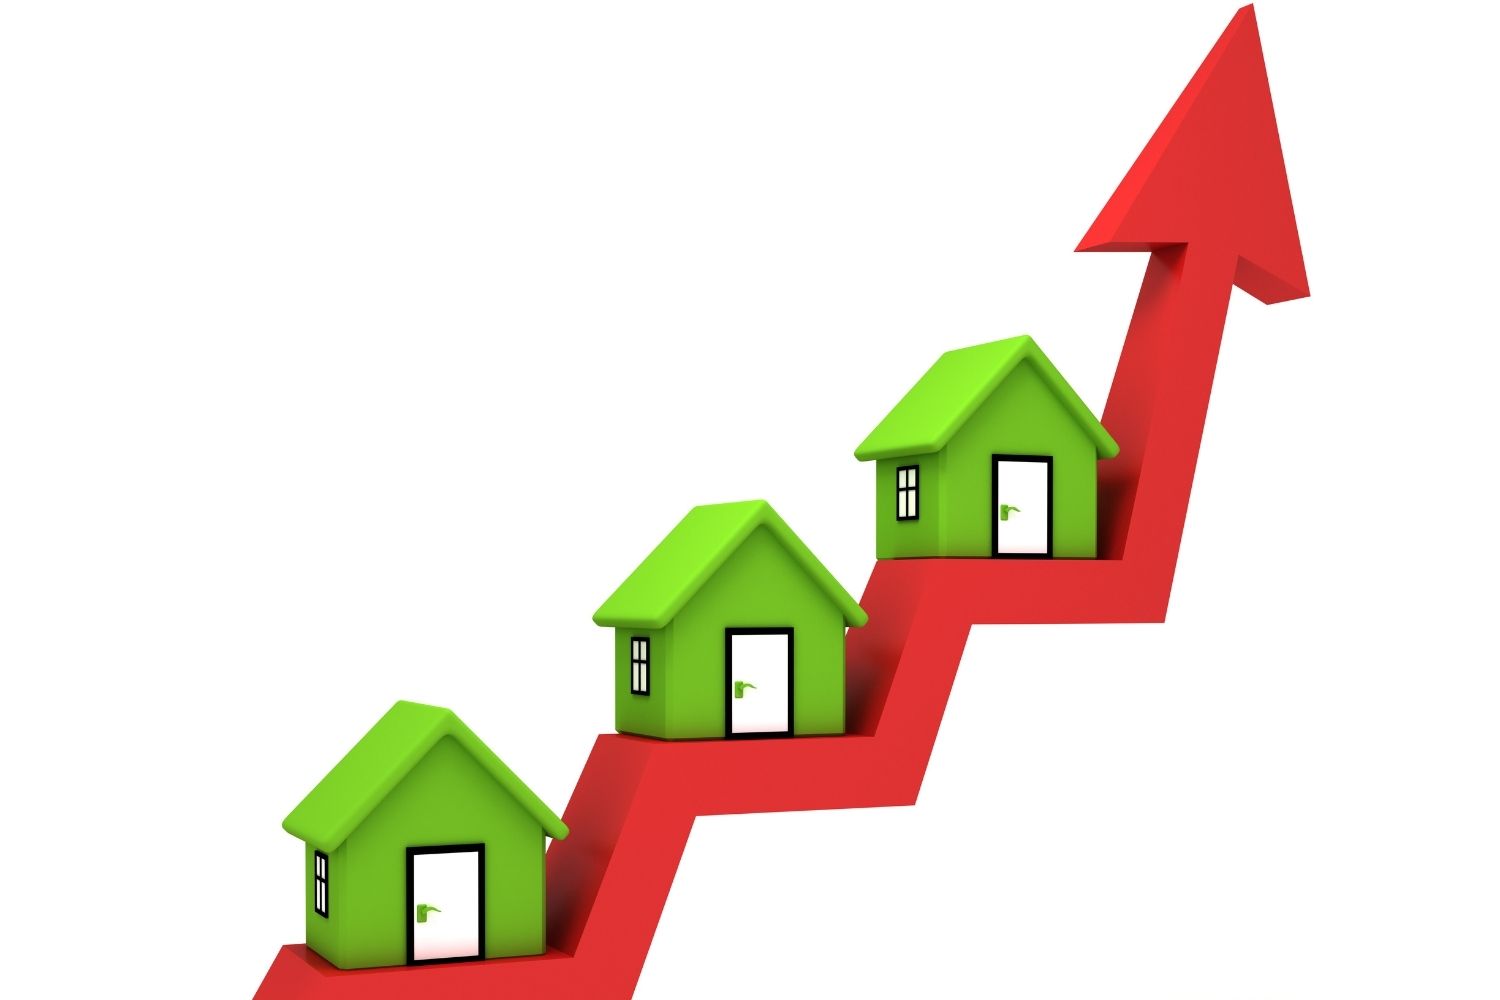 Co wpływa na wzrost cen nieruchomości z rynku pierwotnego?